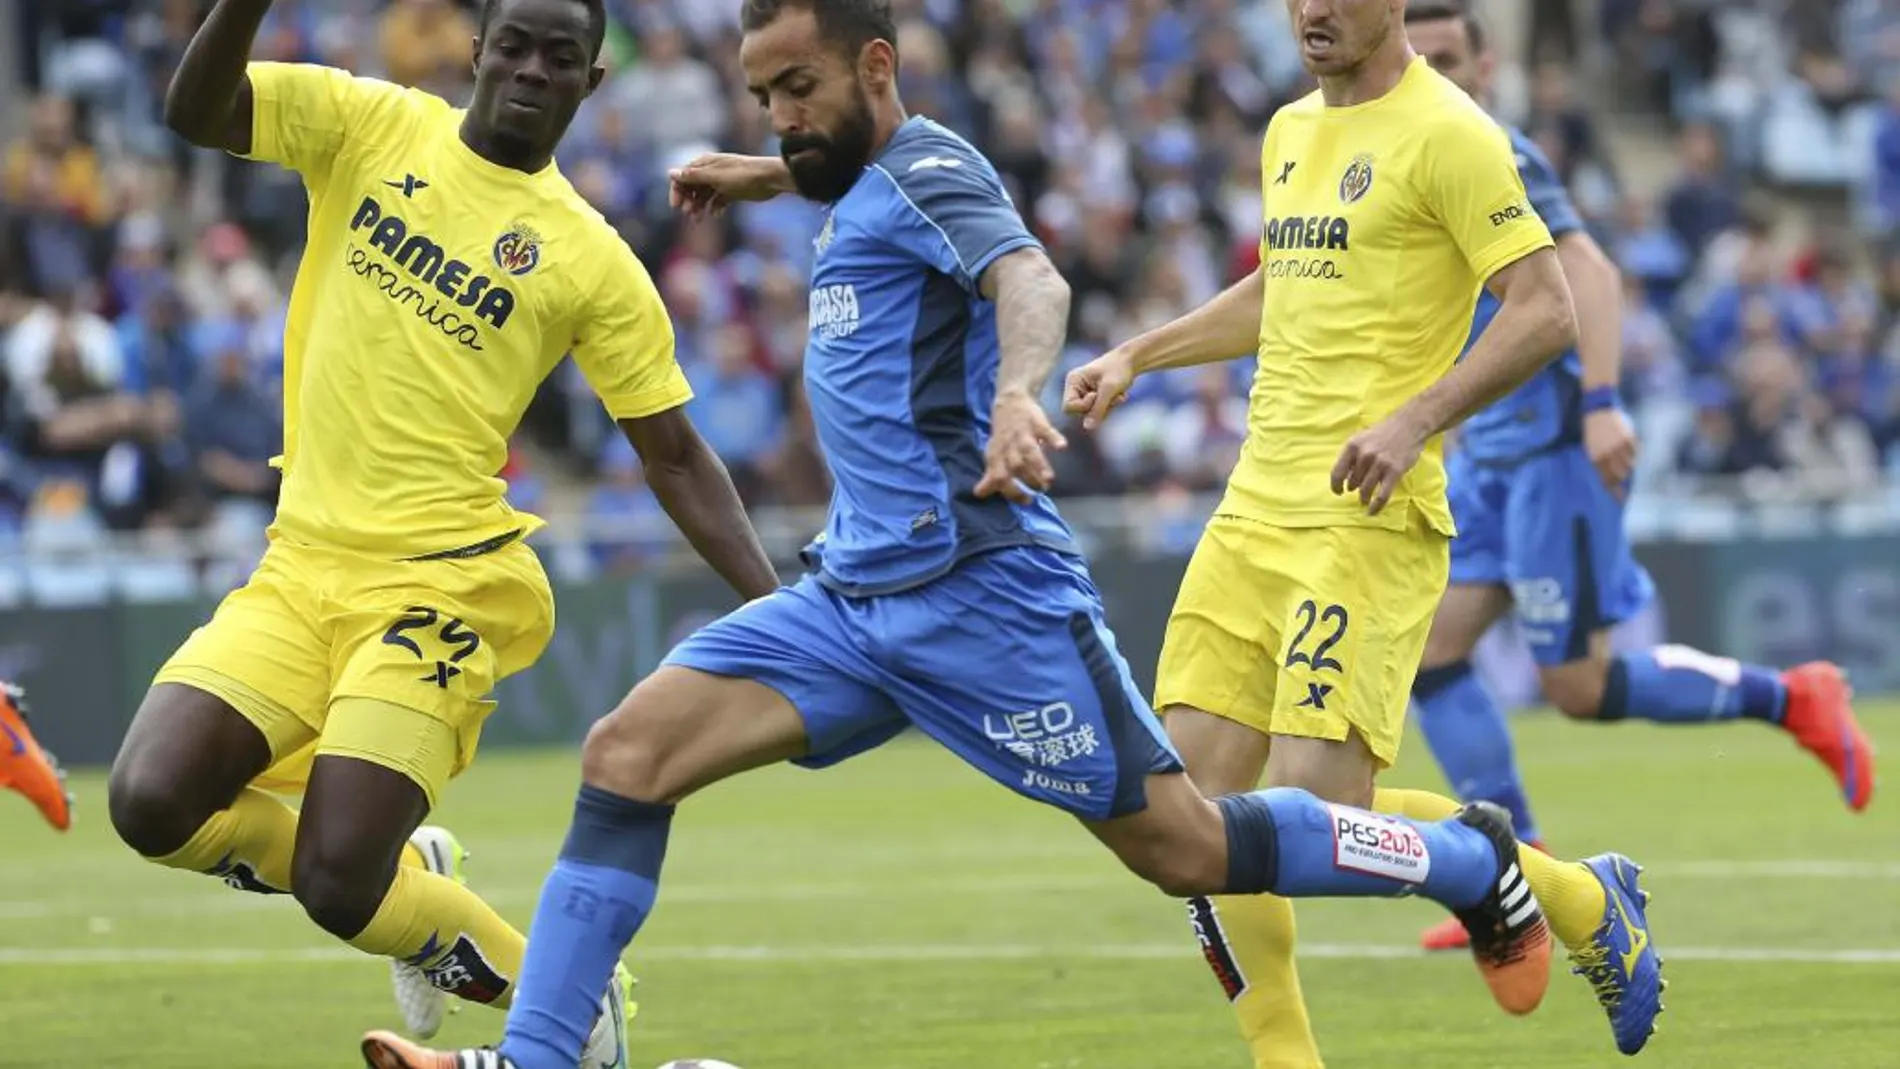 El jugador del Getafe Diego Castro (c) avanza con el balón ante la defensa de Bailly (i) y Rukavina, del Villarreal